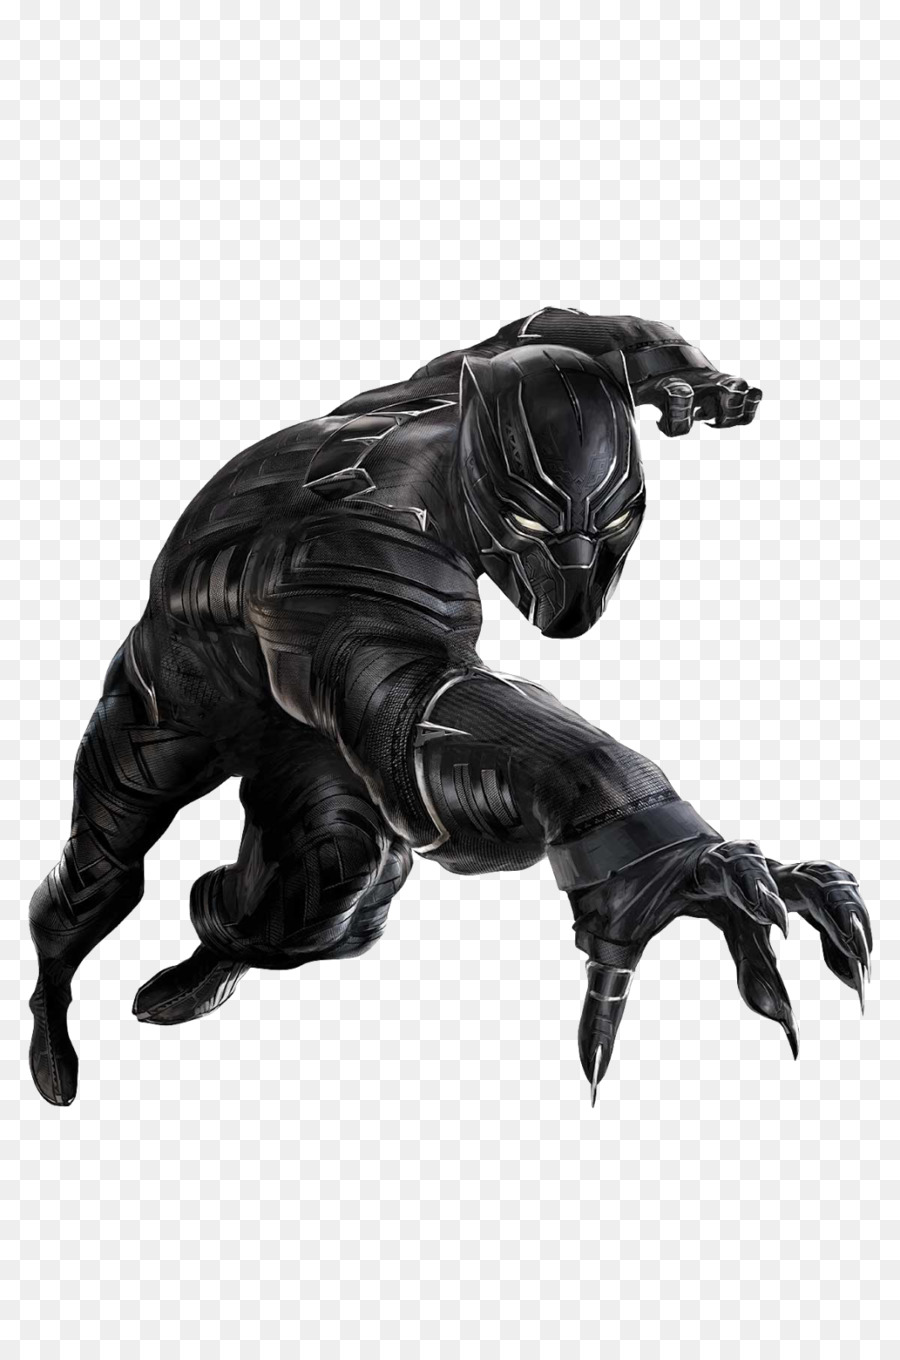 Marvel black panther.